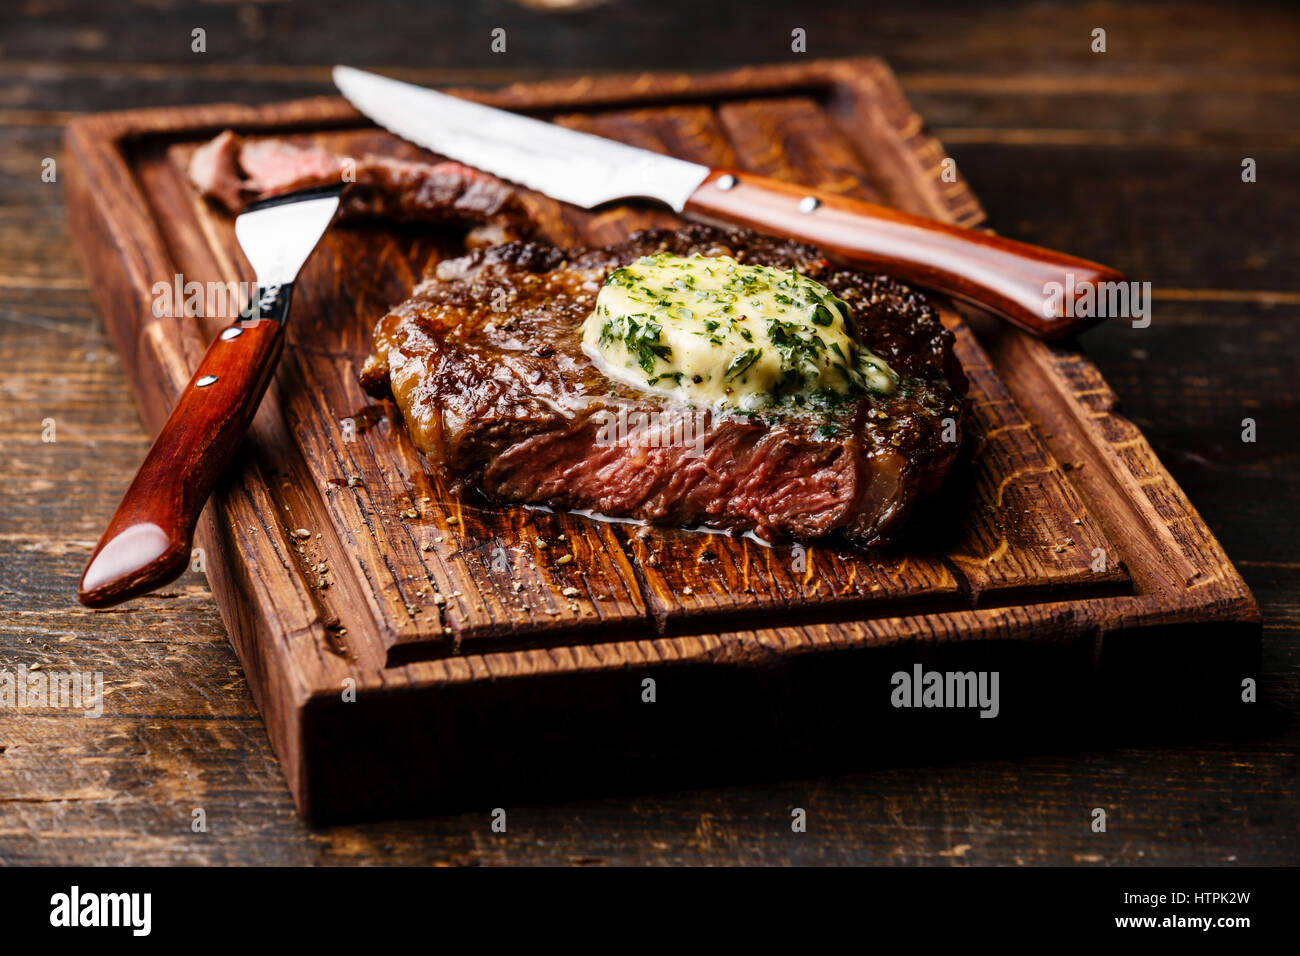 Grigliata di mezzo raro steak bistecca con burro alle erbe sul bordo di taglio serve dimensioni Foto Stock